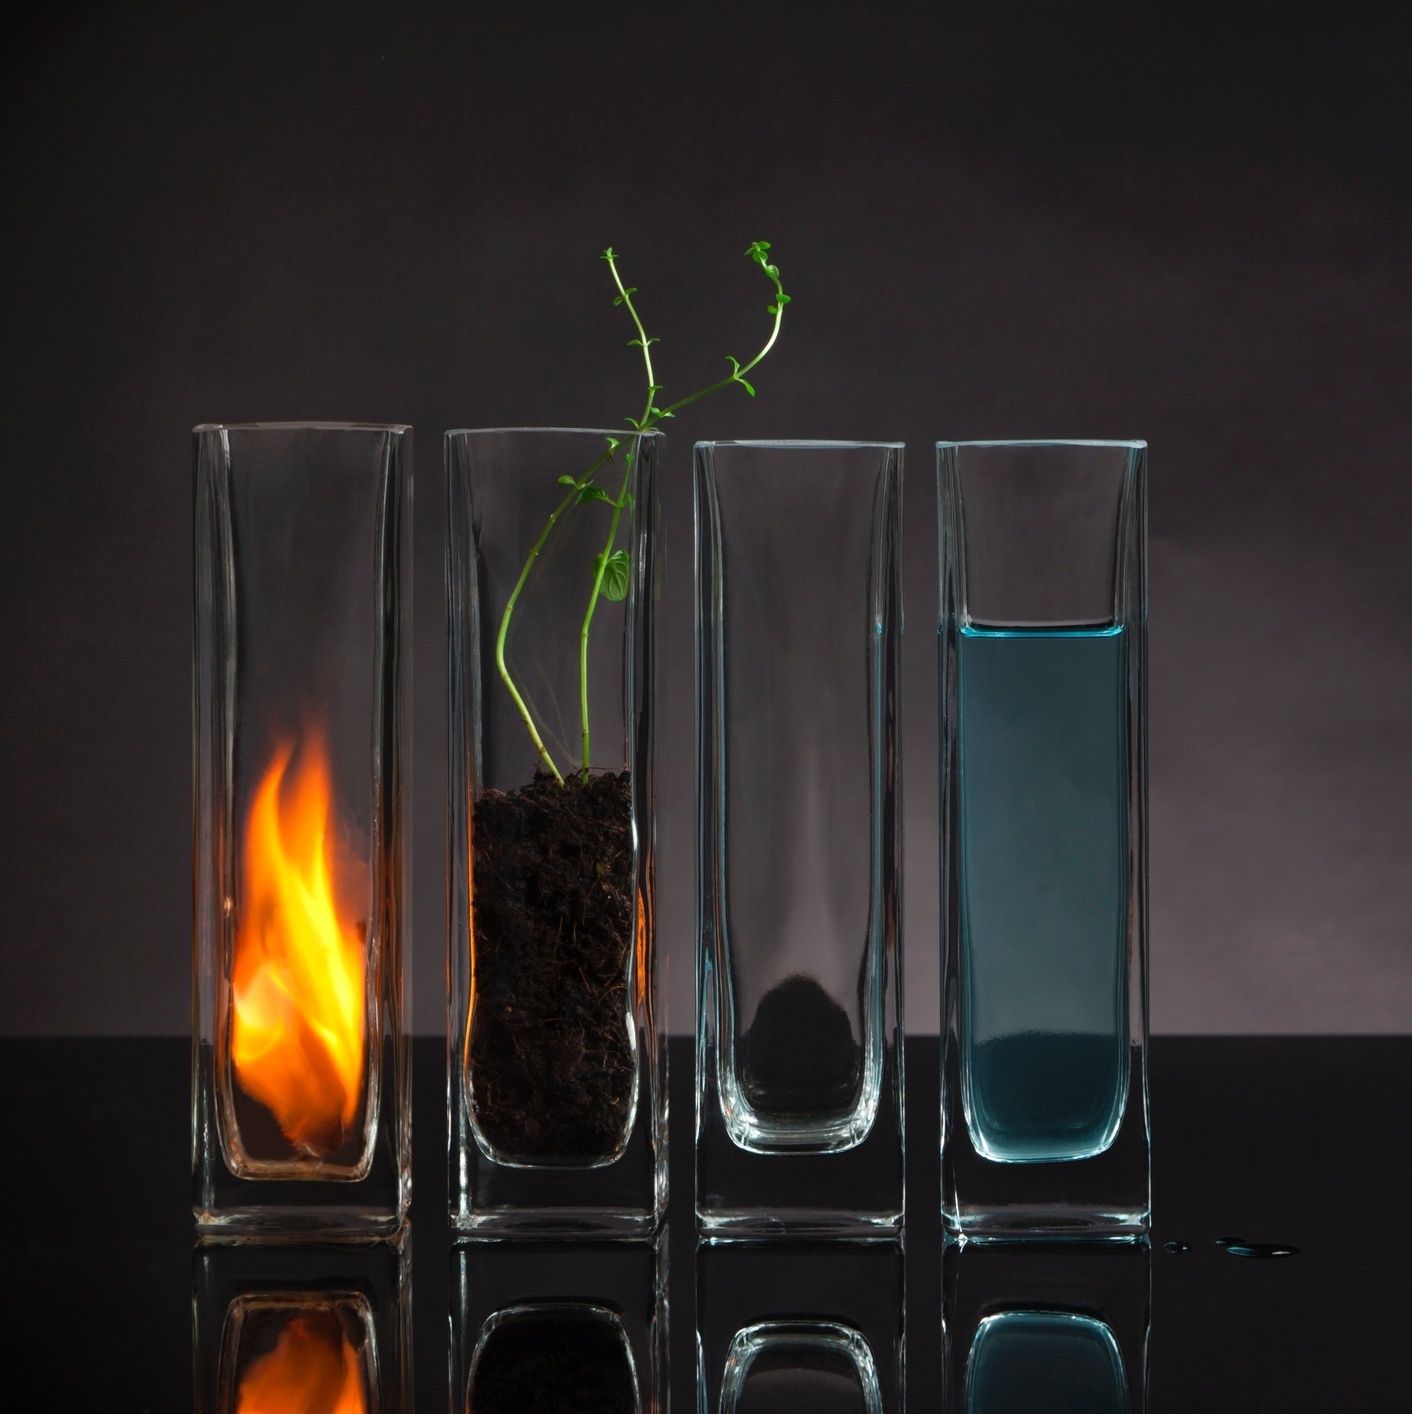 Qual elemento você é: Água, Fogo, Ar ou Terra?